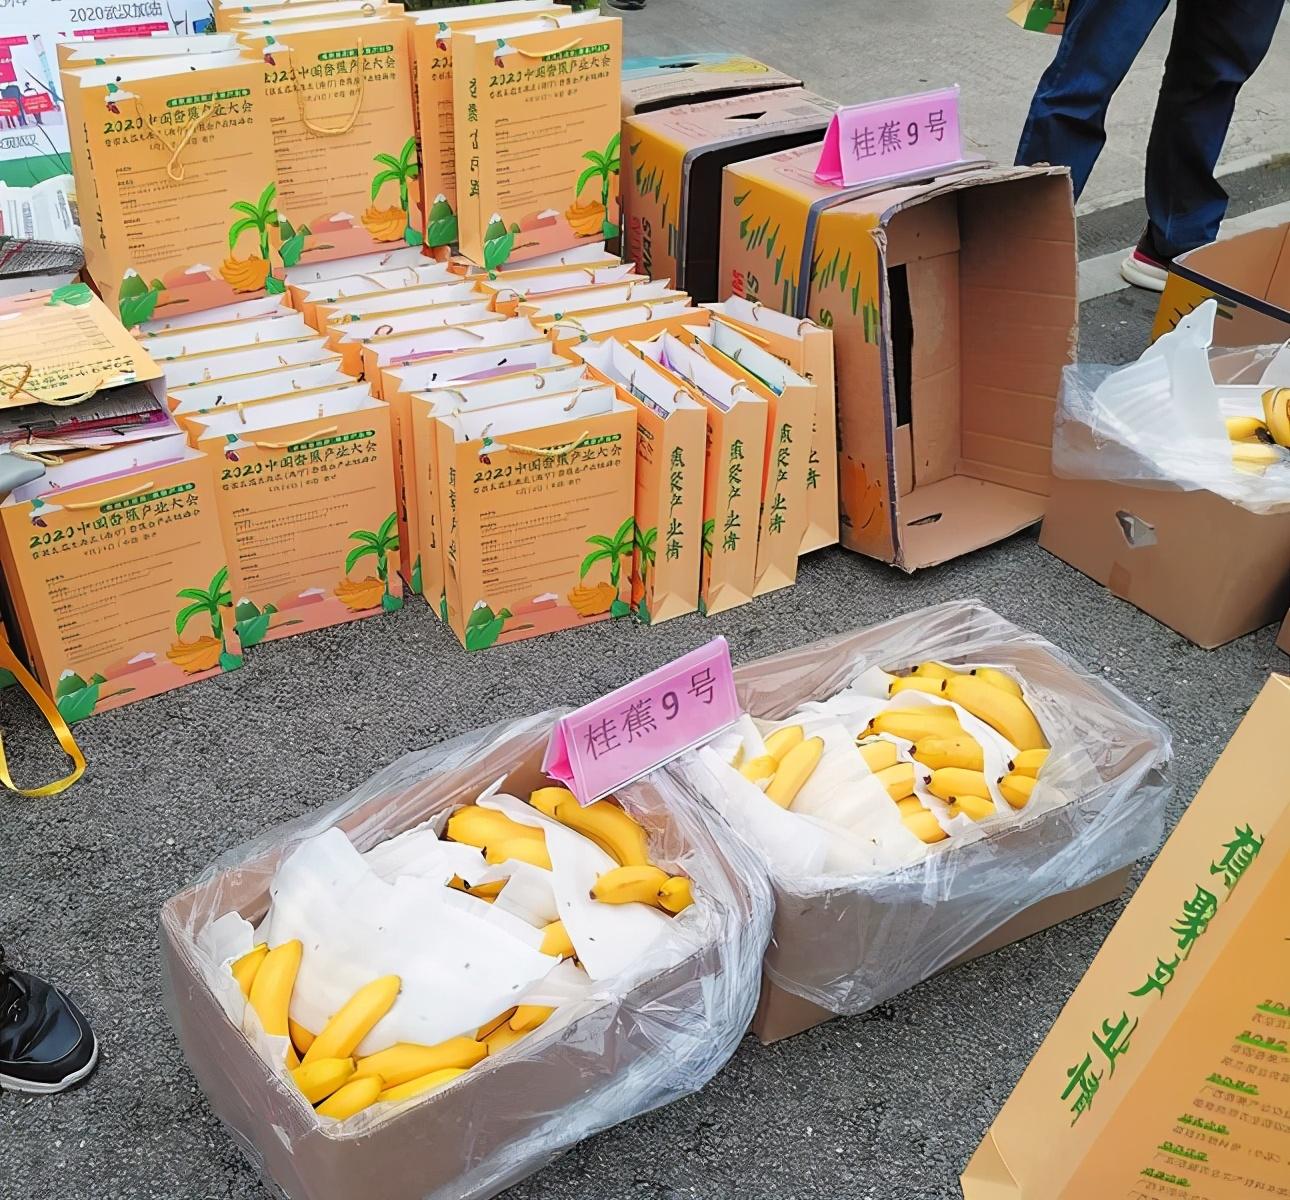 2020中國香蕉産業大會在南寧隆安縣舉行 廣西香蕉平均畝産量列全國第一